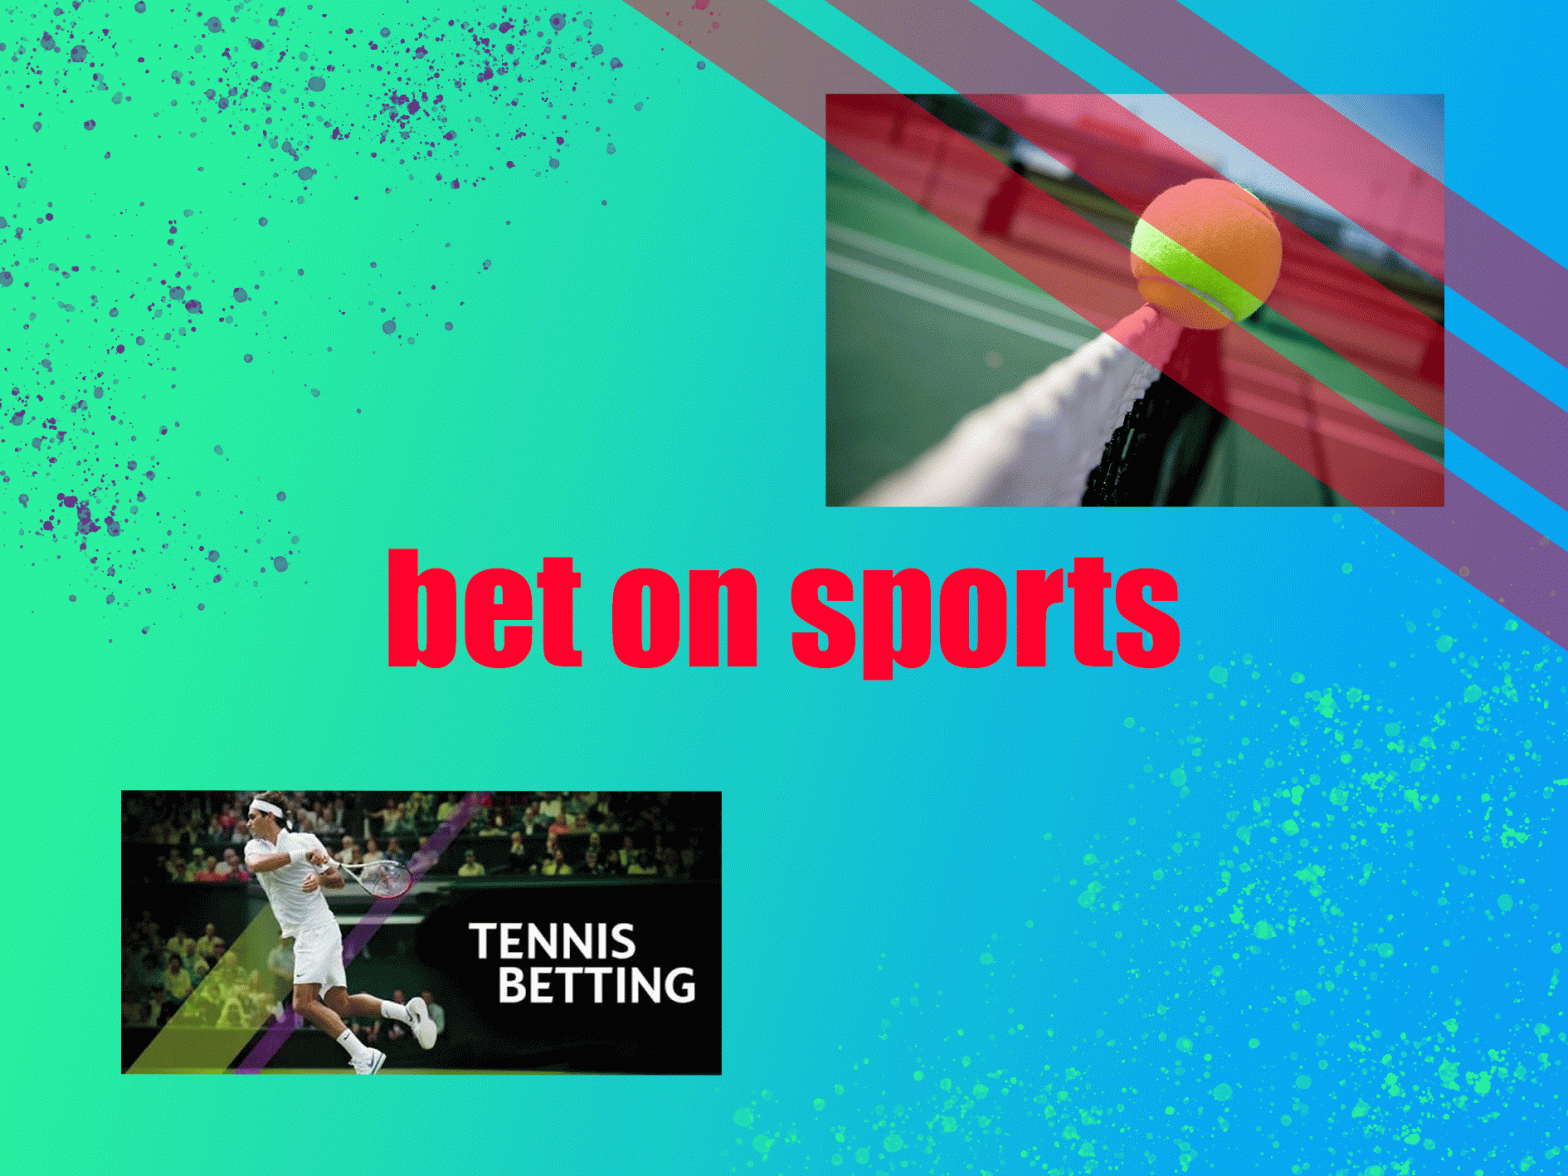 Tennis bets